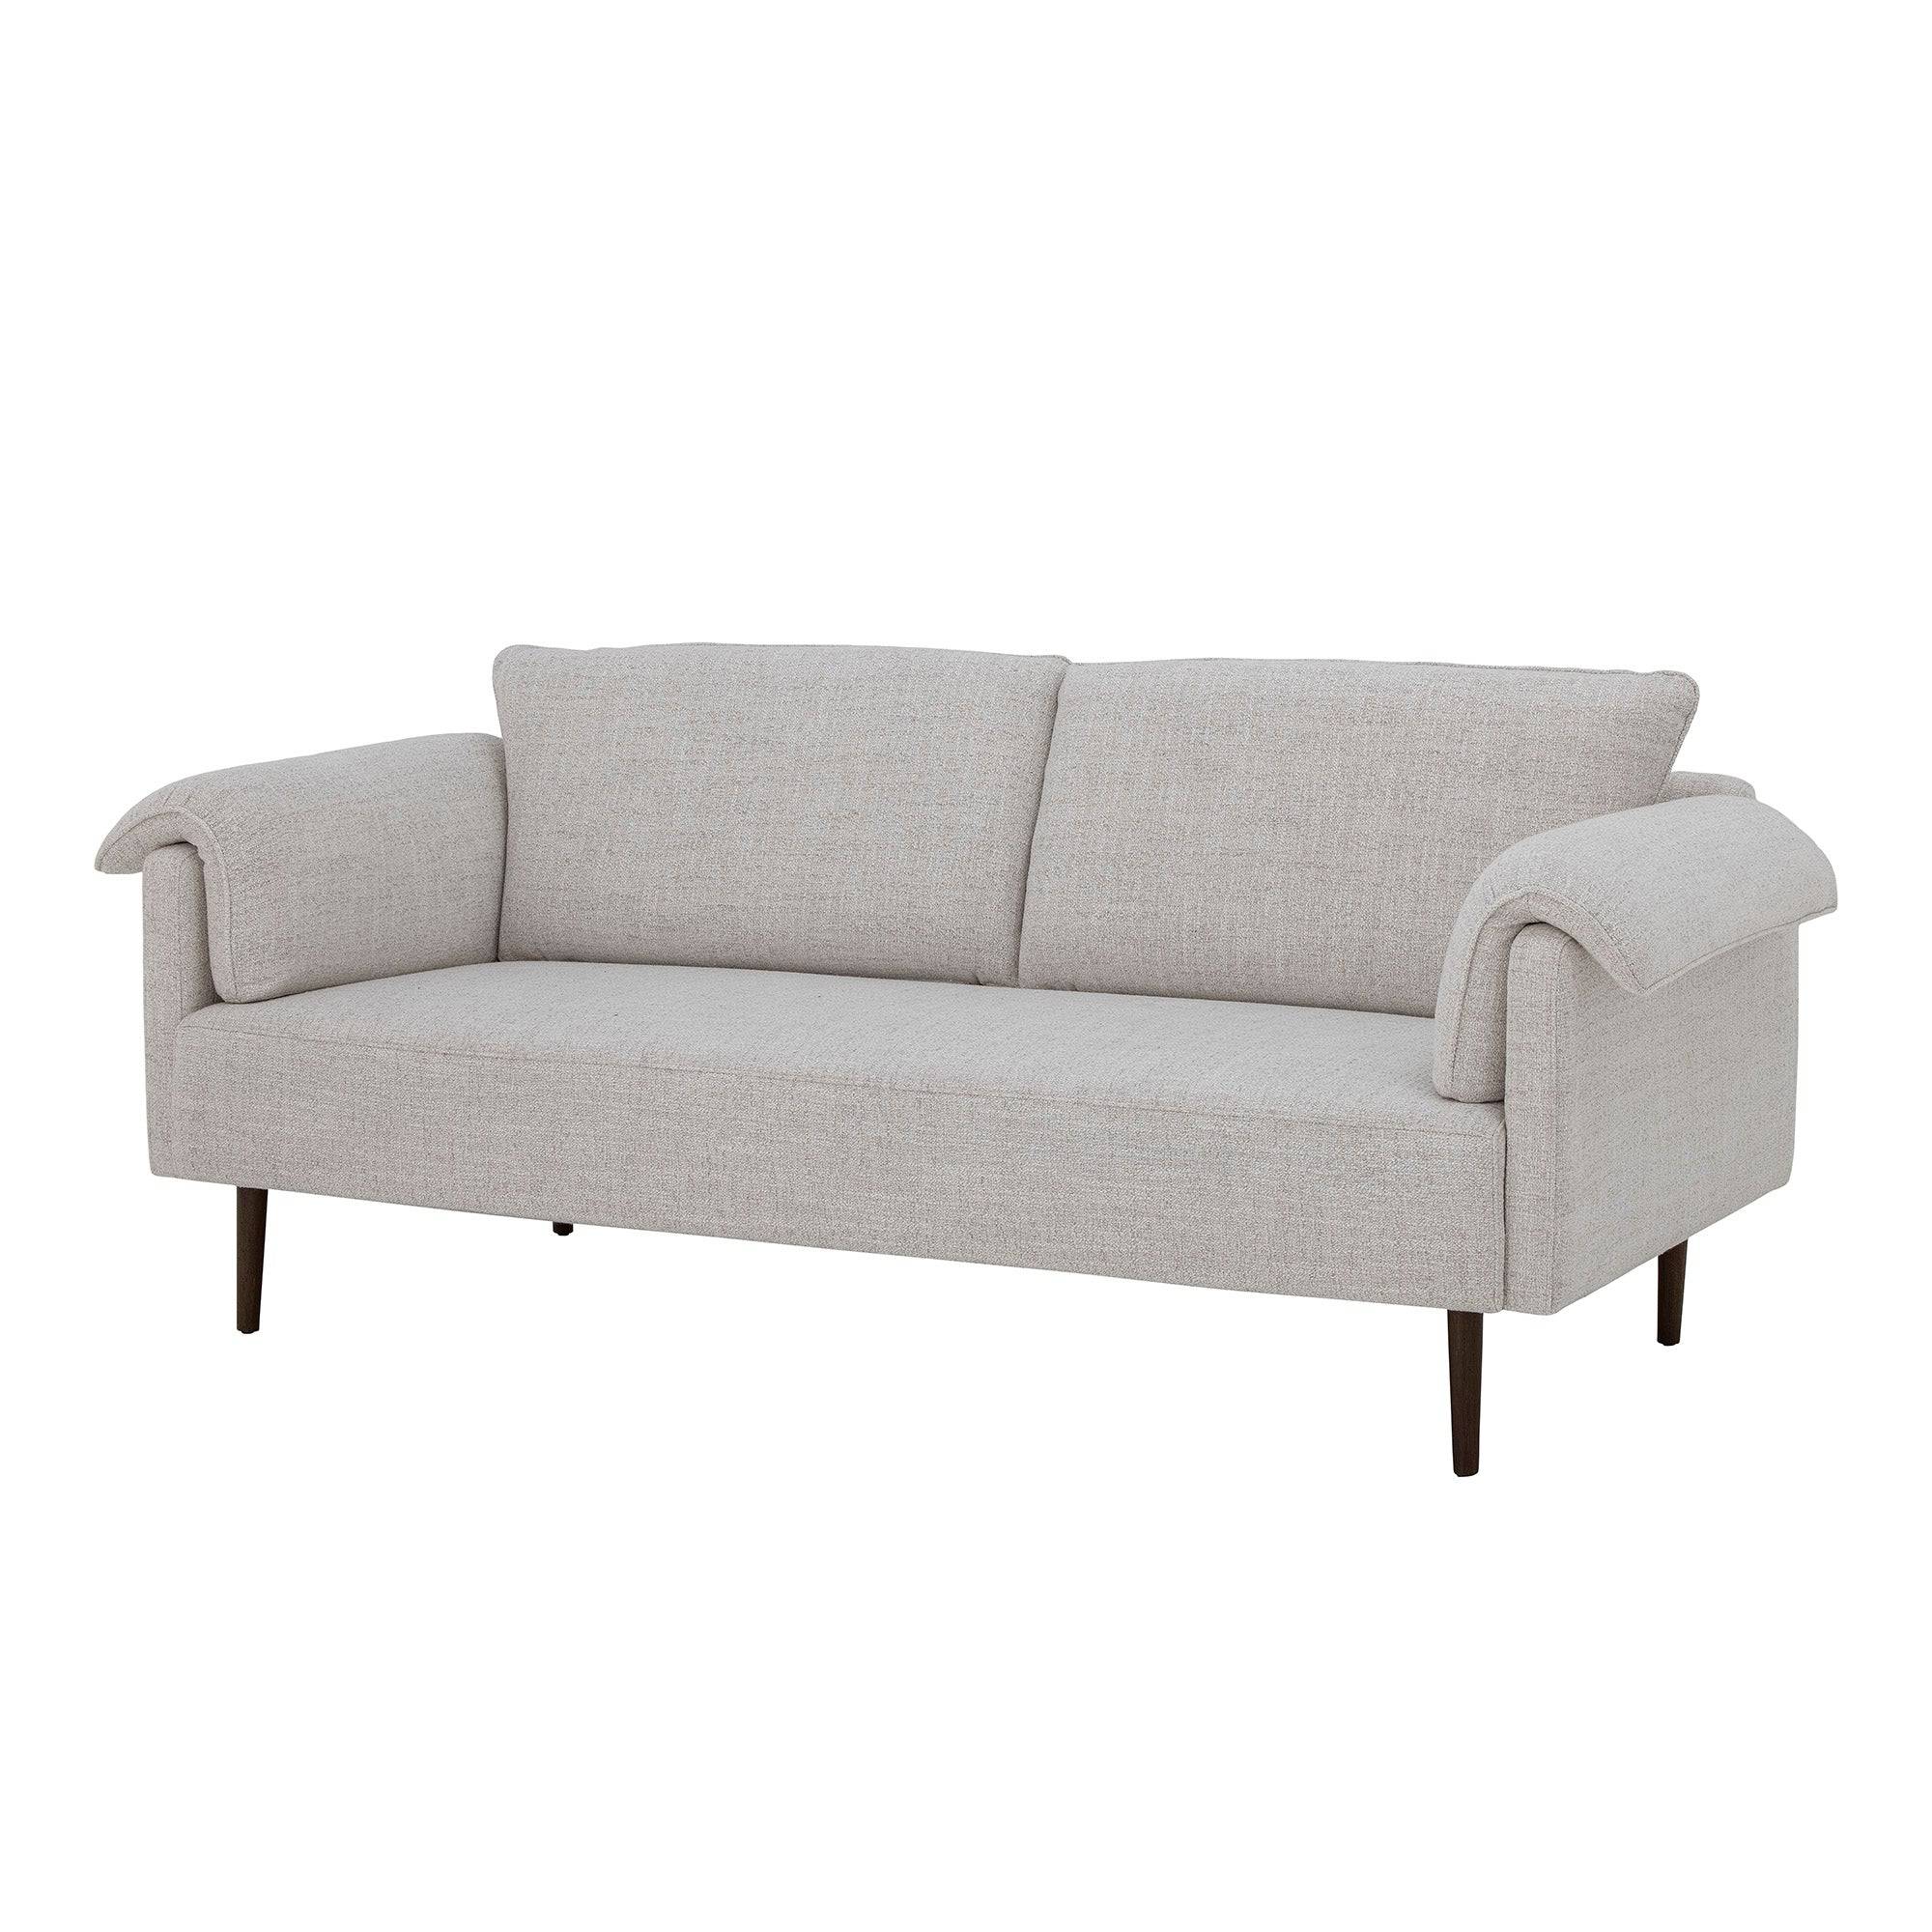 Chesham Sofa - THAT COOL LIVING